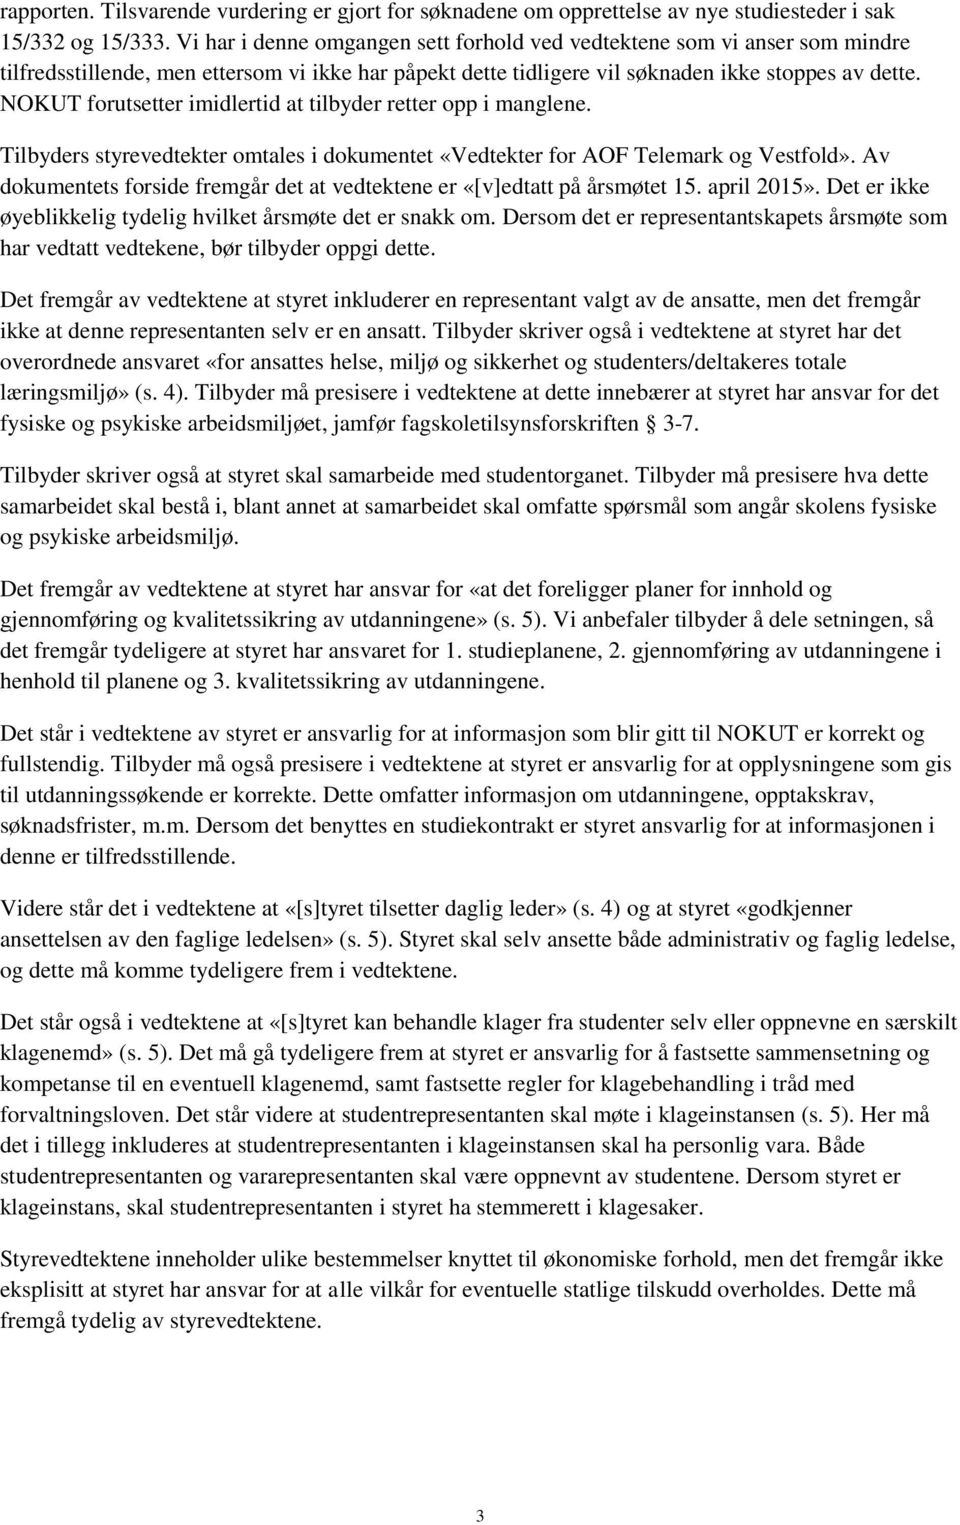 NOKUT forutsetter imidlertid at tilbyder retter opp i manglene. Tilbyders styrevedtekter omtales i dokumentet «Vedtekter for AOF Telemark og Vestfold».